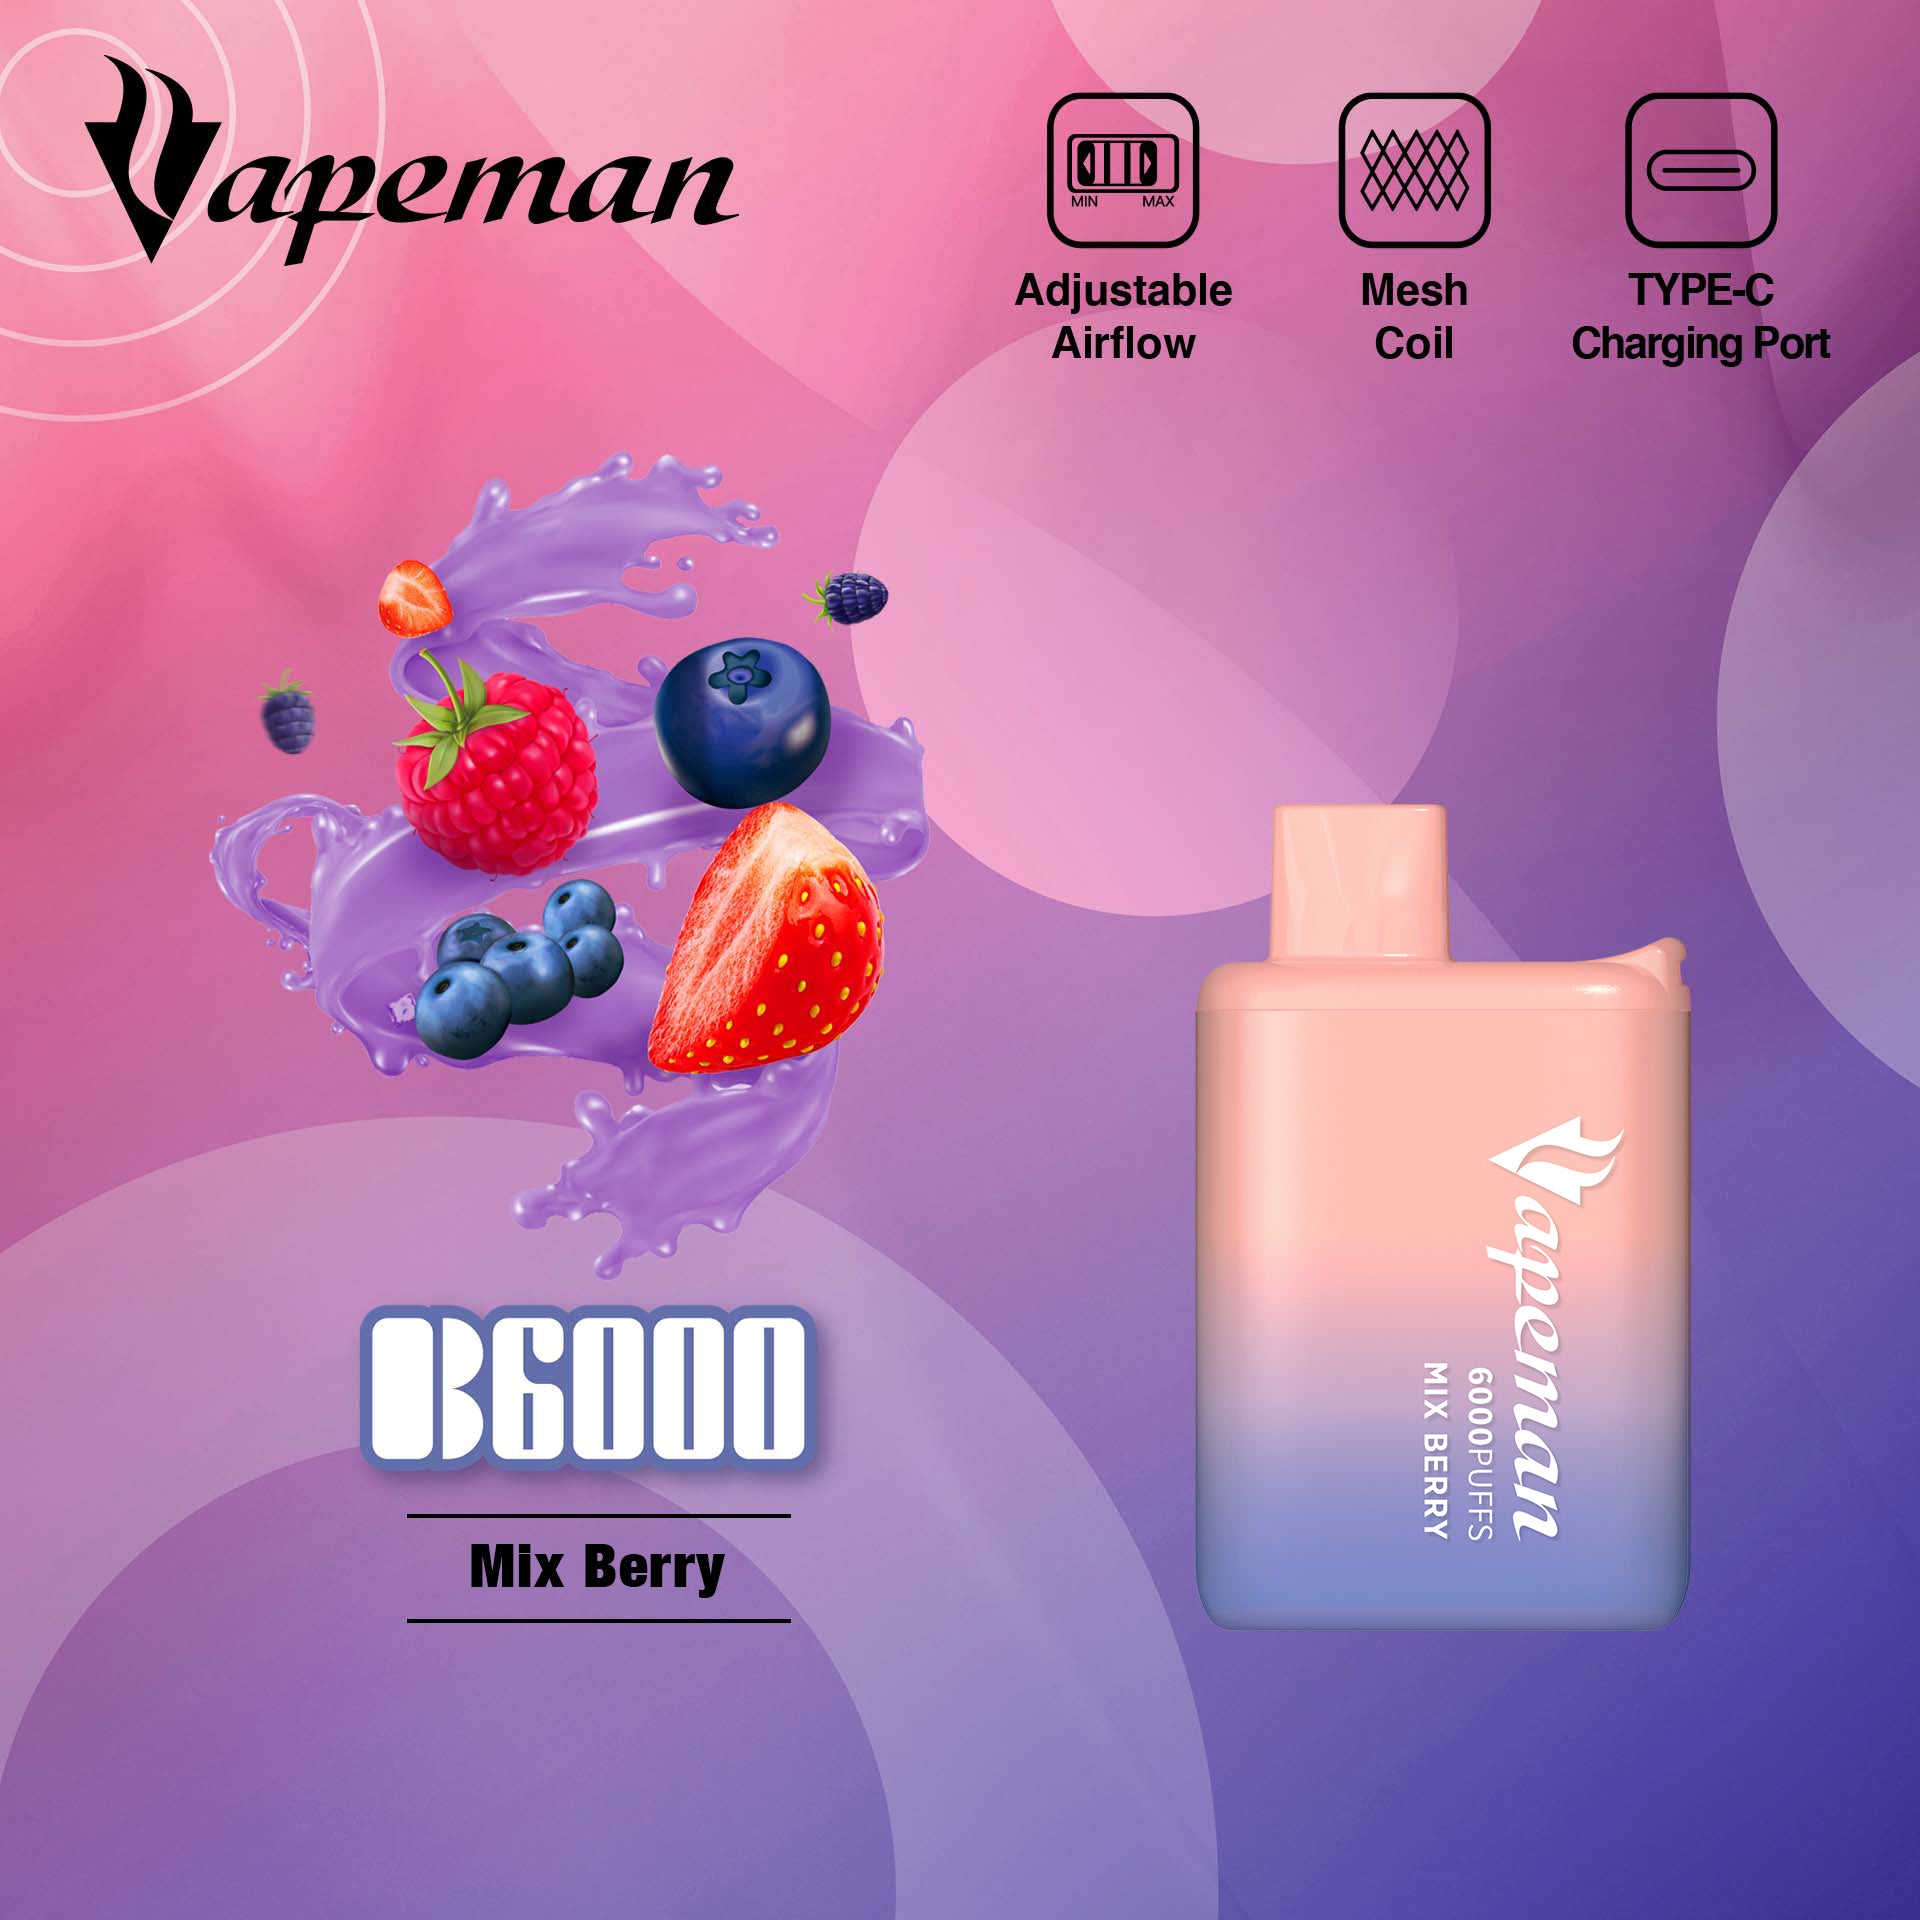 Vapeman - B6000 - Mix Berry -  Disposable Vape Device - Salt Nicotine 